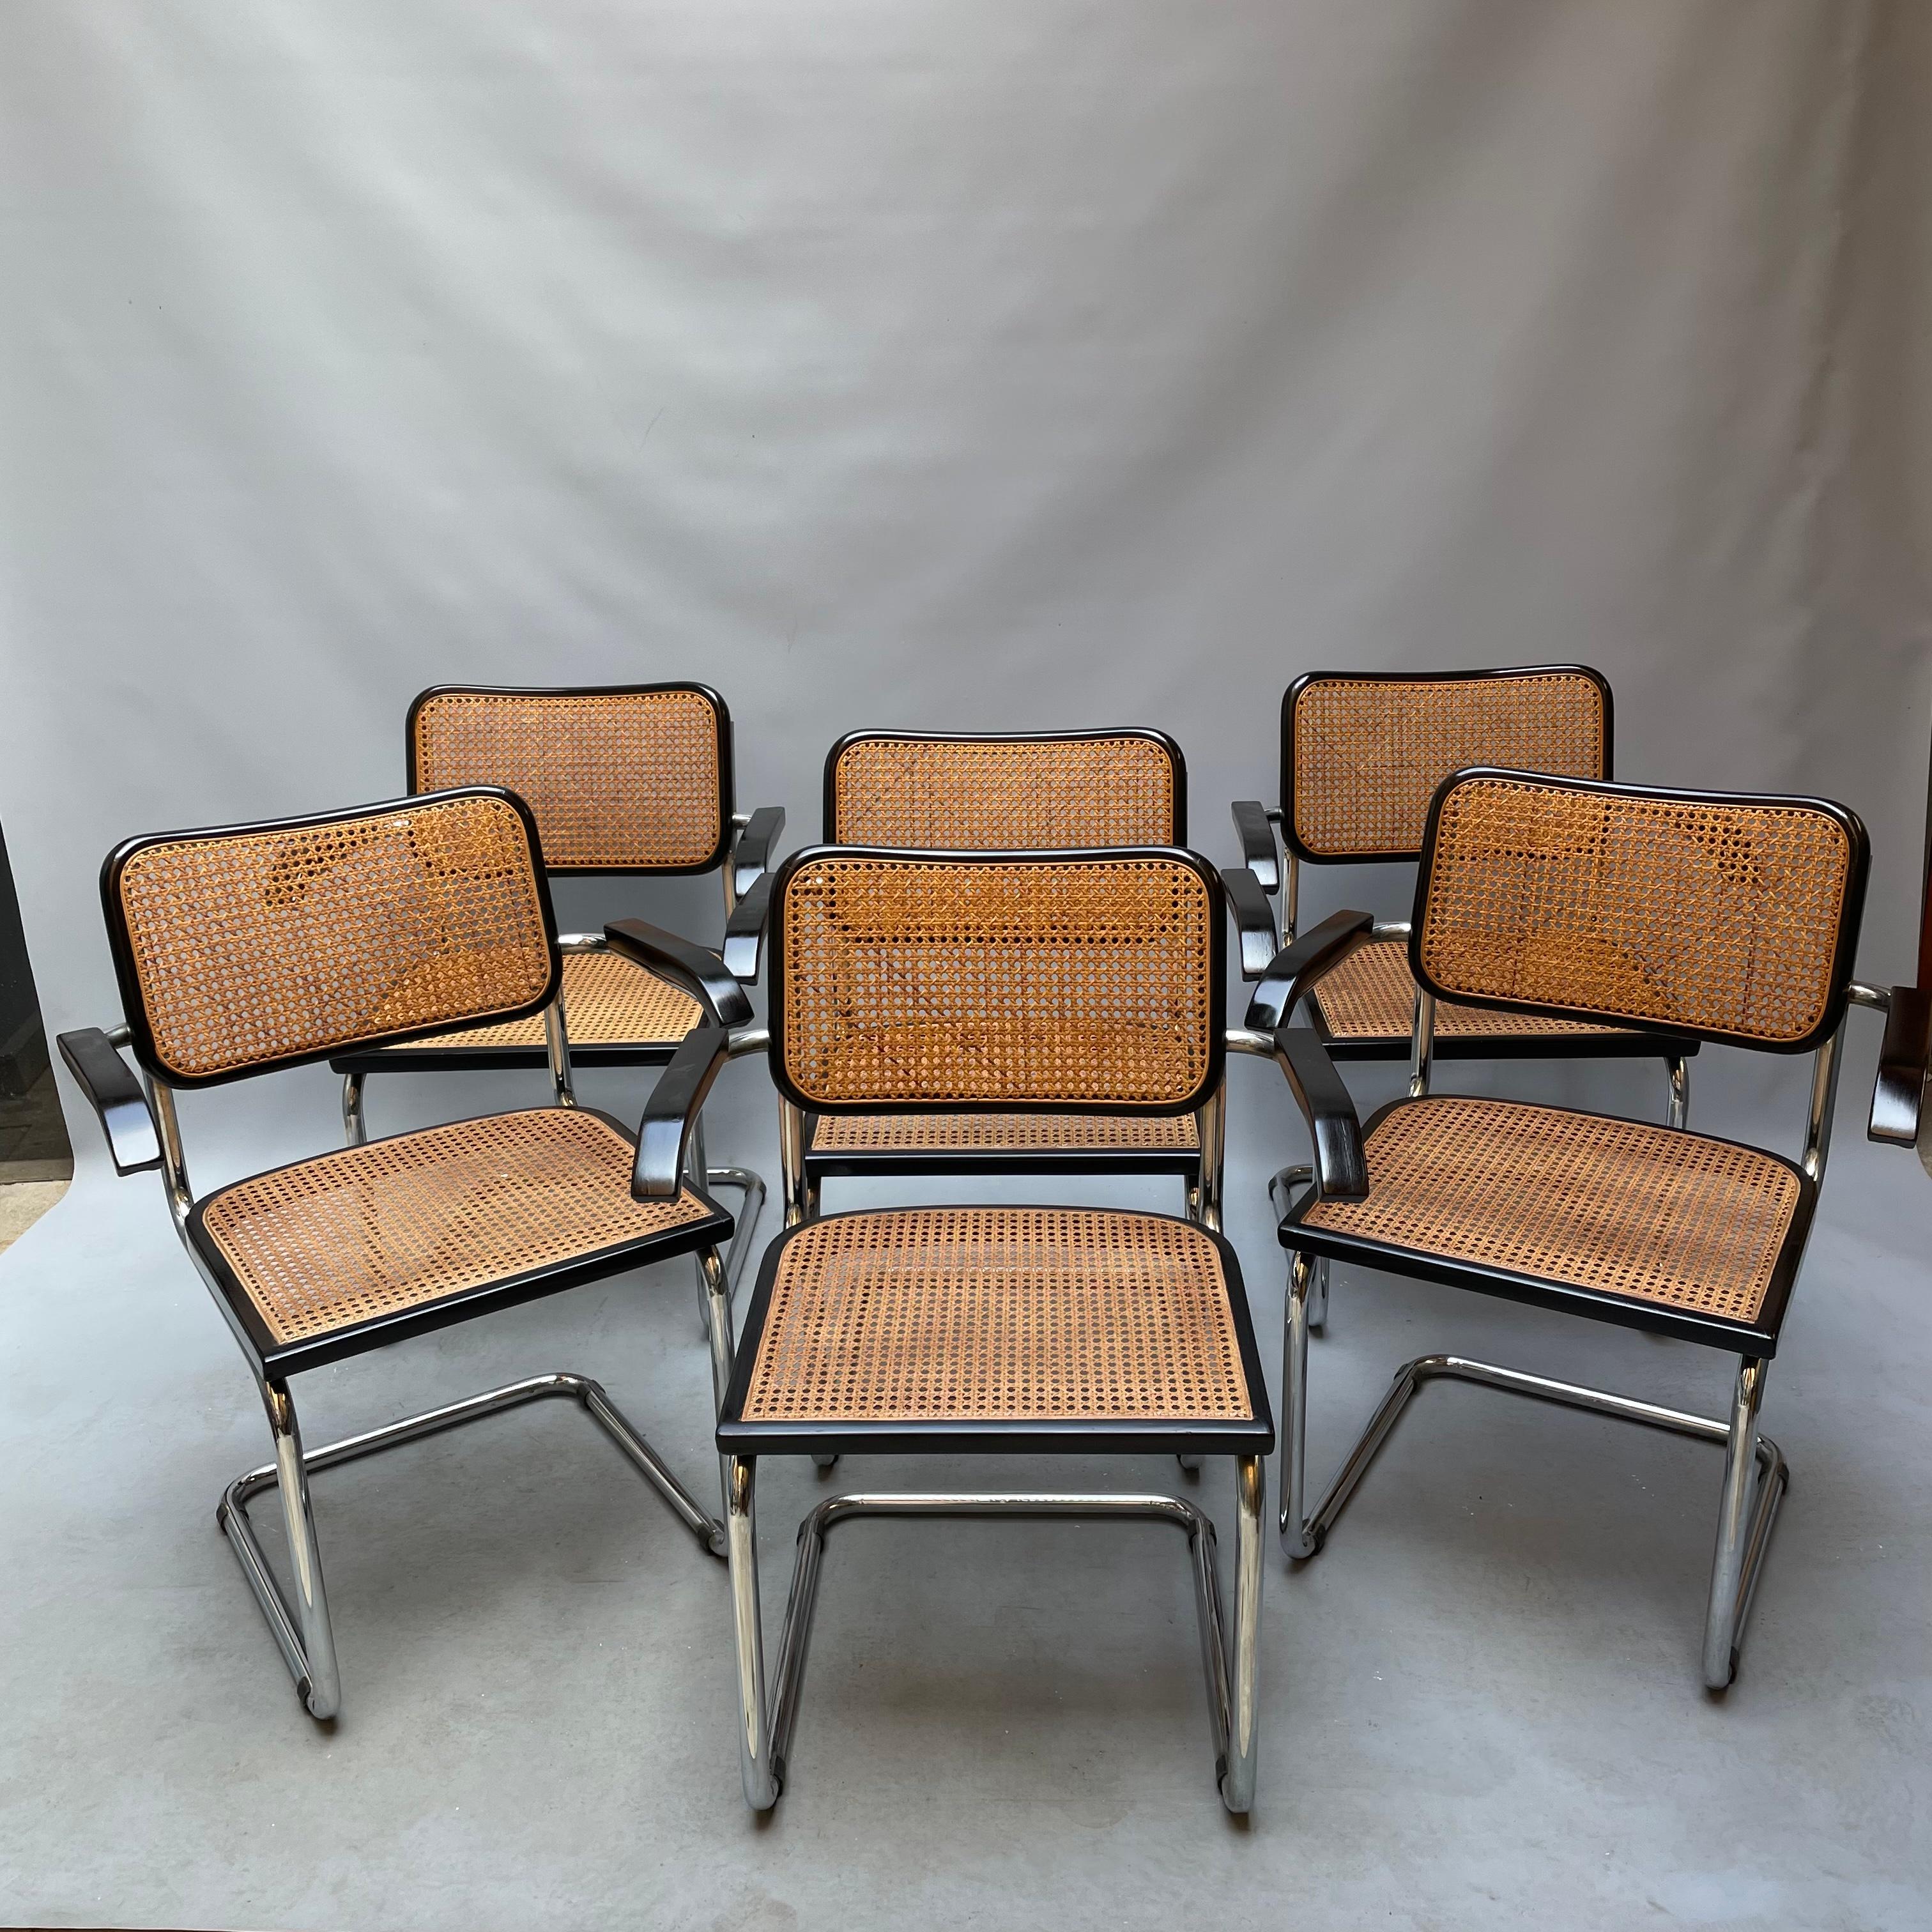 Fauteuils garnis en hêtre peint naturel, ou laqué noir. L'échafaudage, en paille de Vienne, est réalisé à la main. Projet iconique du vingtième siècle, nous proposons un ensemble de 6 chaises, difficilement trouvables d'origine des années 60. Les